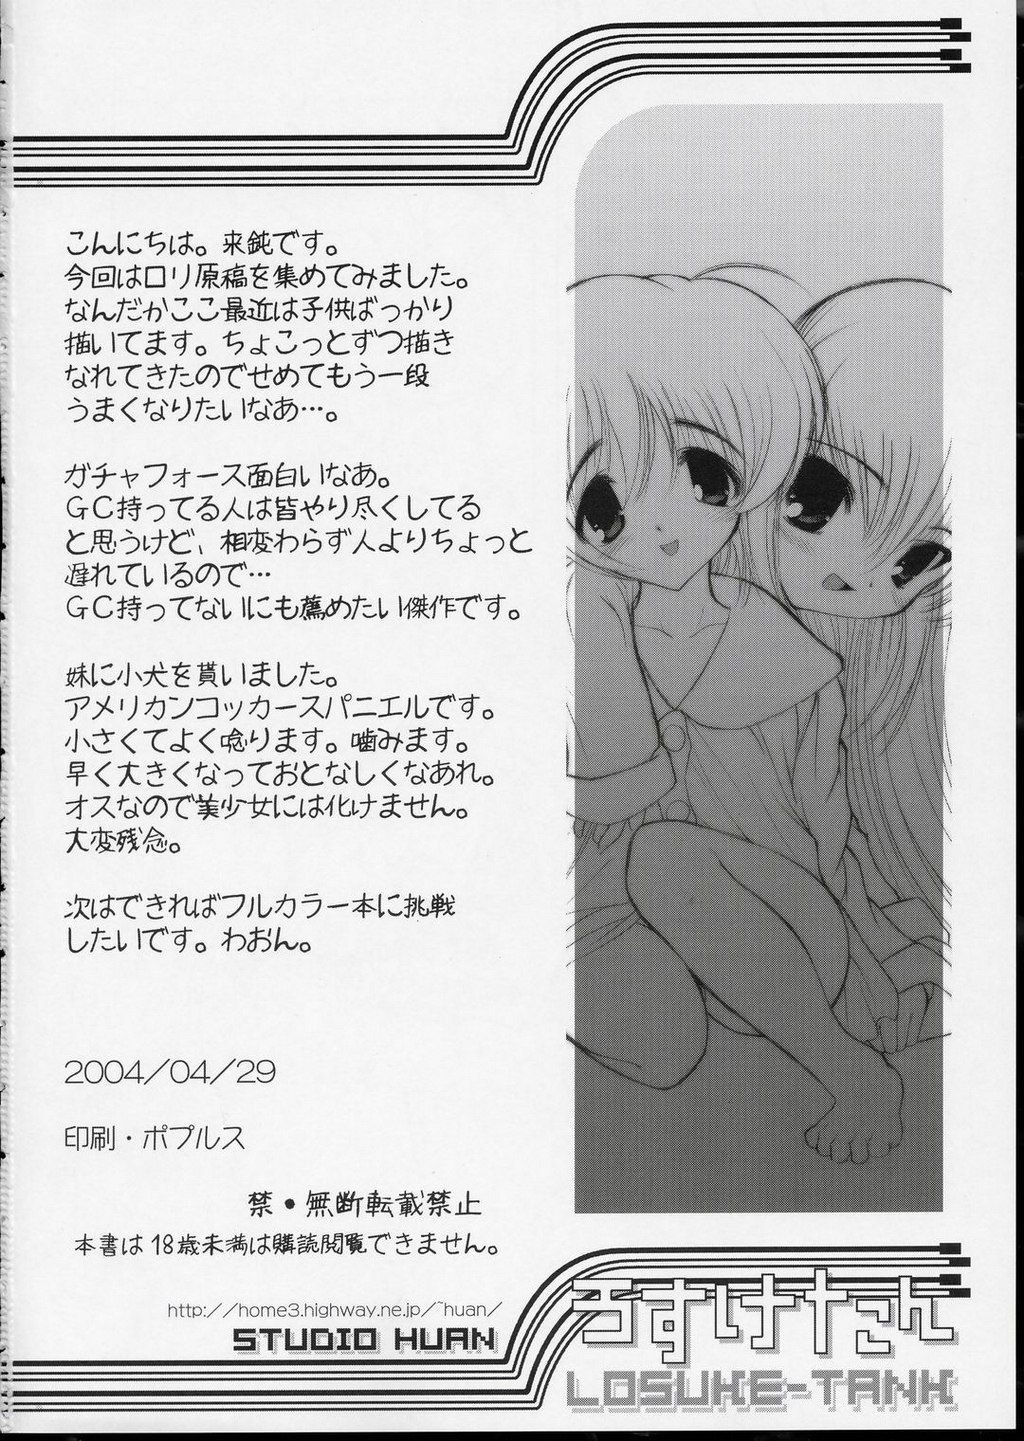 (CR35) [STUDIO HUAN (Raidon)] LOSUKE-TANK (Shuukan Watashi no Onii-chan) page 45 full